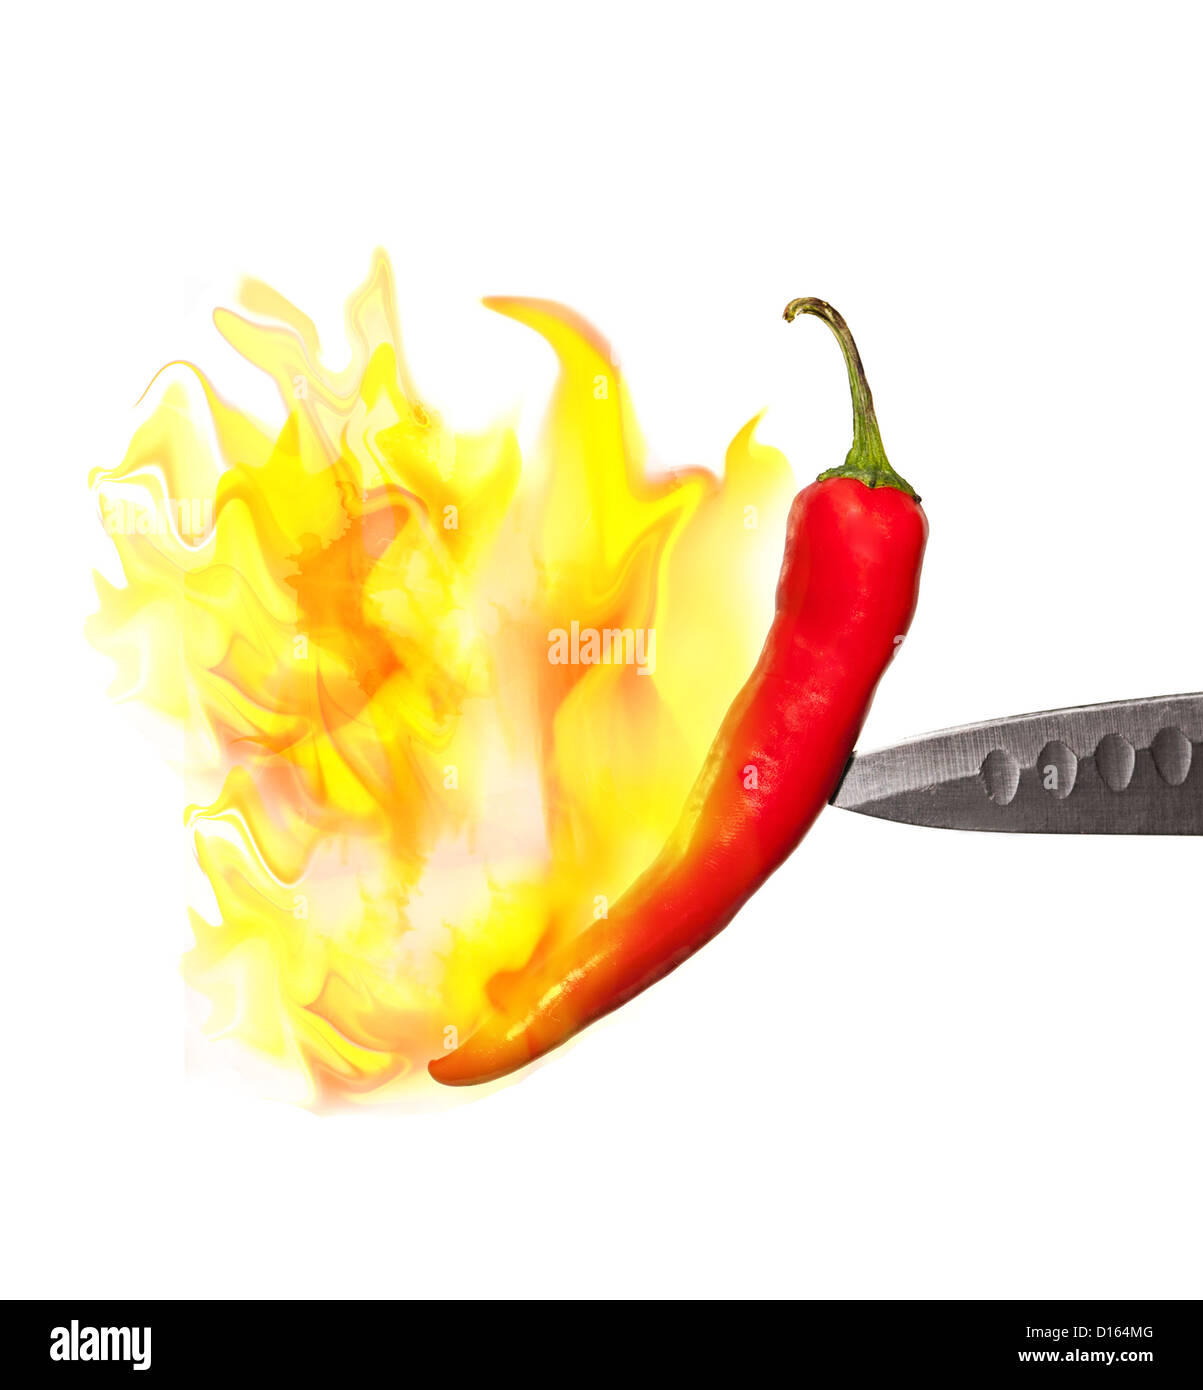 Red hot chili pepper en flammes isolé sur fond blanc Banque D'Images